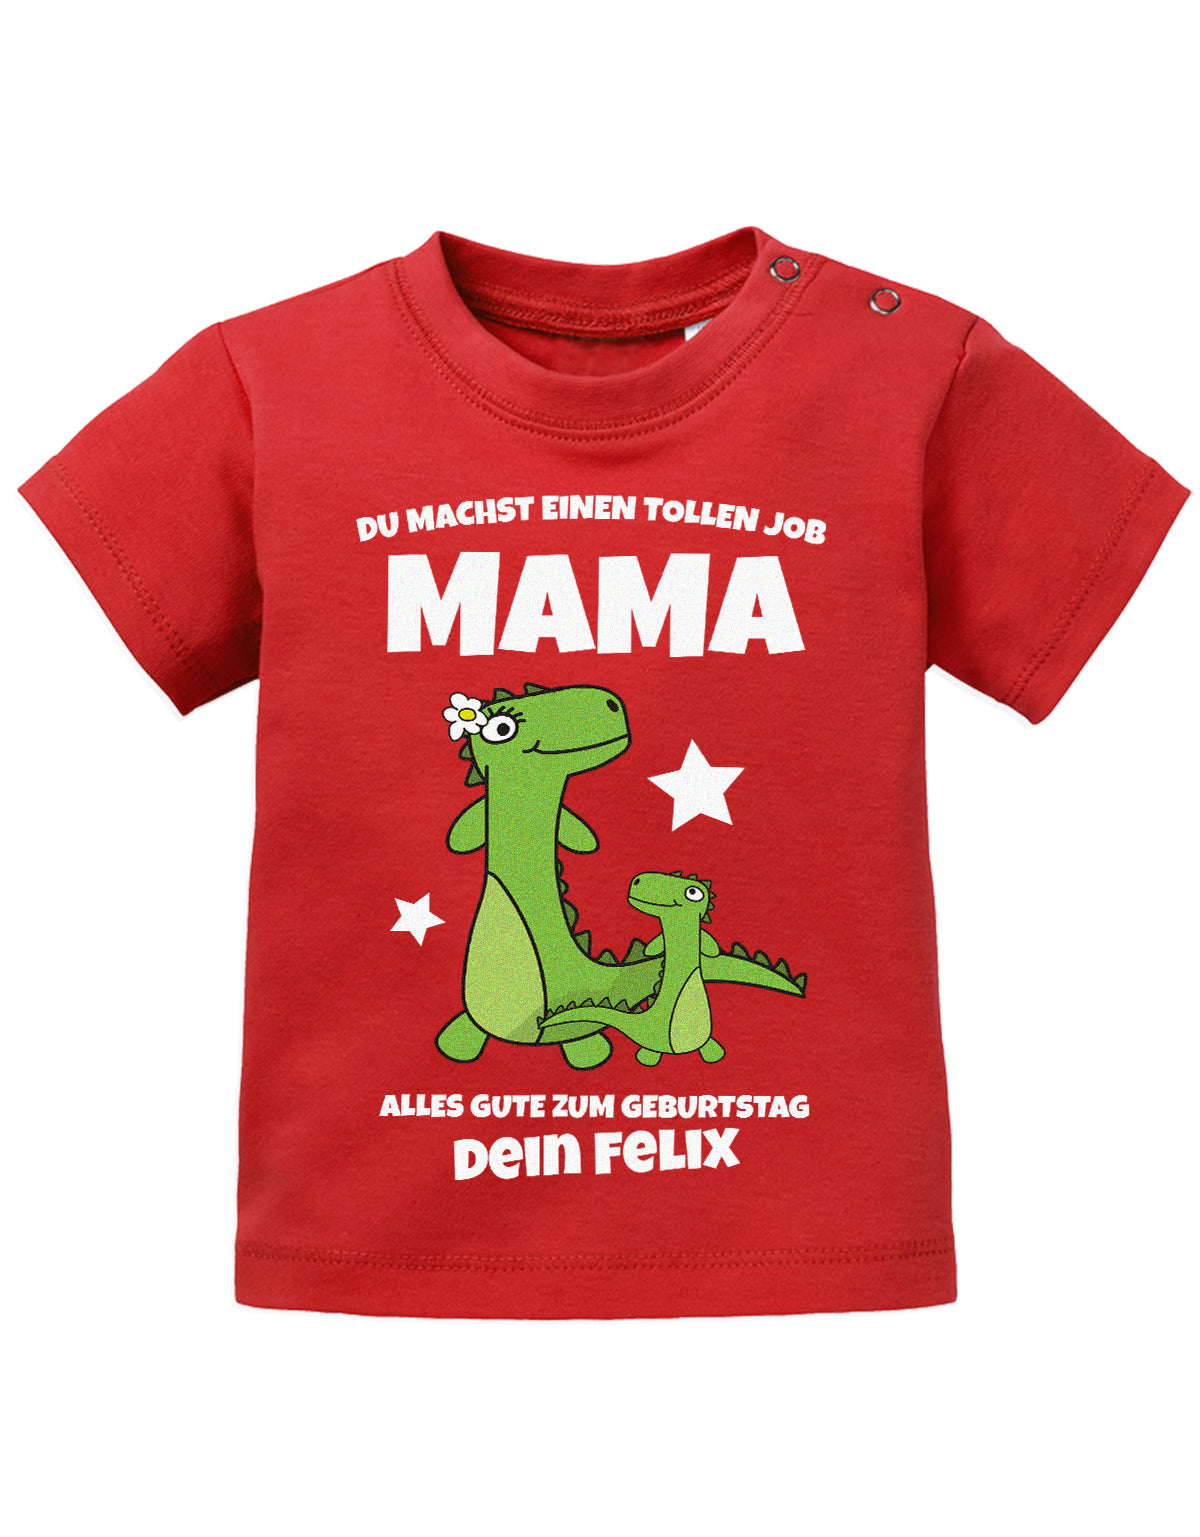 Mama Spruch Baby Shirt. Du machst einen tollen Job, Mama. Alles Gute zum Geburtstag. Personalisiert mit Namen.